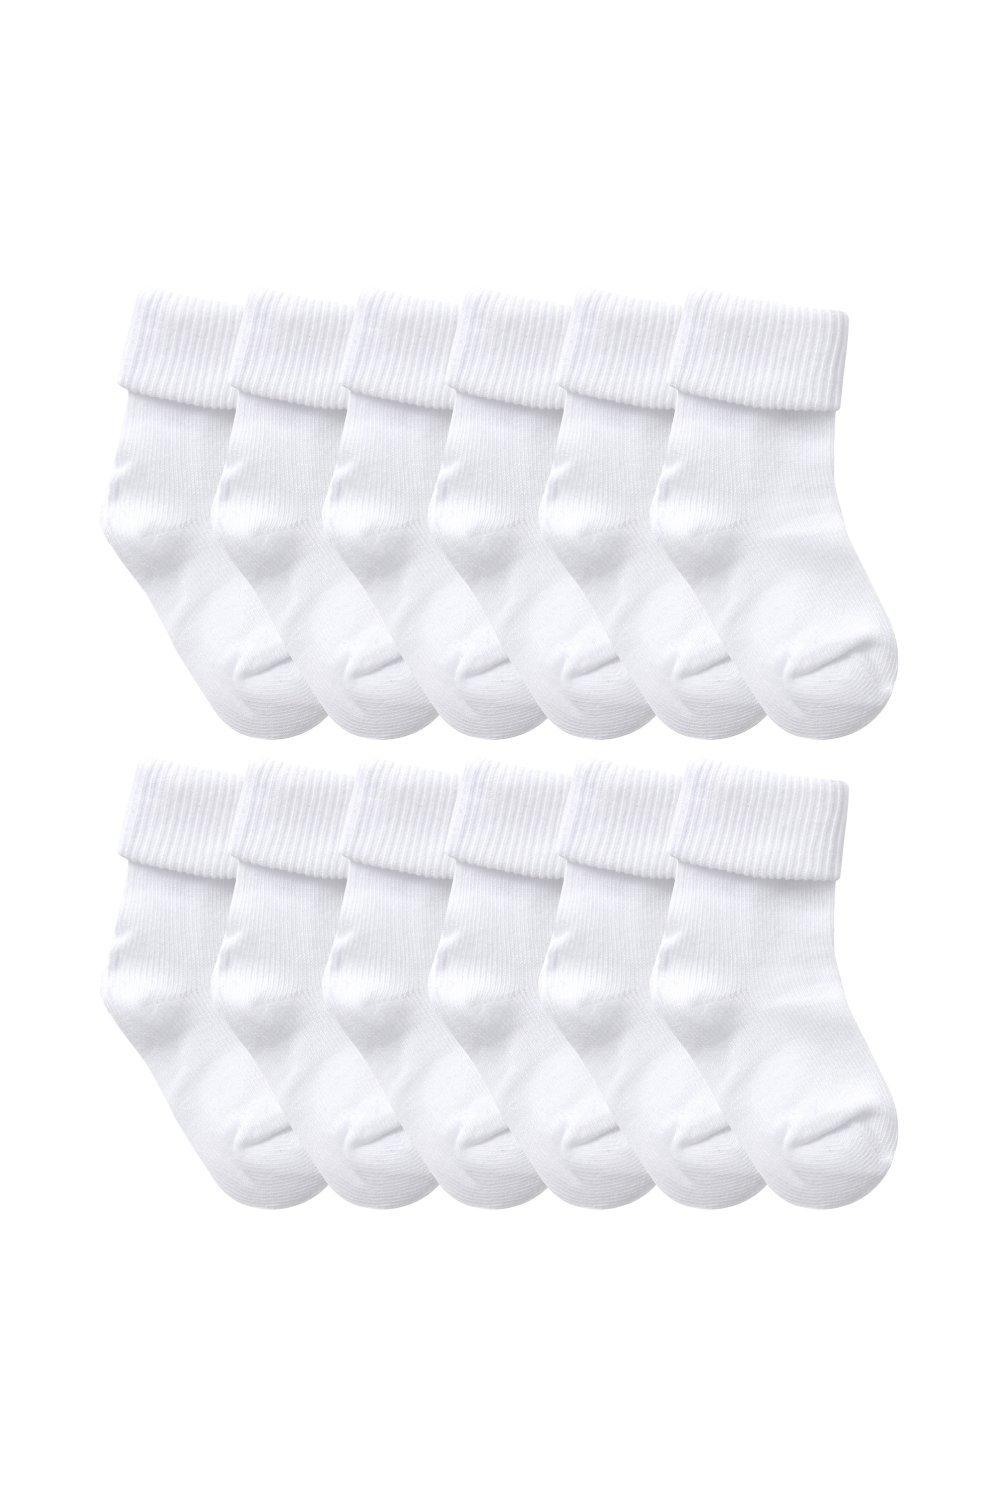 игра nintendo destiny connect tick tock travelers 12 пар мягких хлопковых однотонных симпатичных носков с перевернутым верхом для малышей Sock Snob, белый